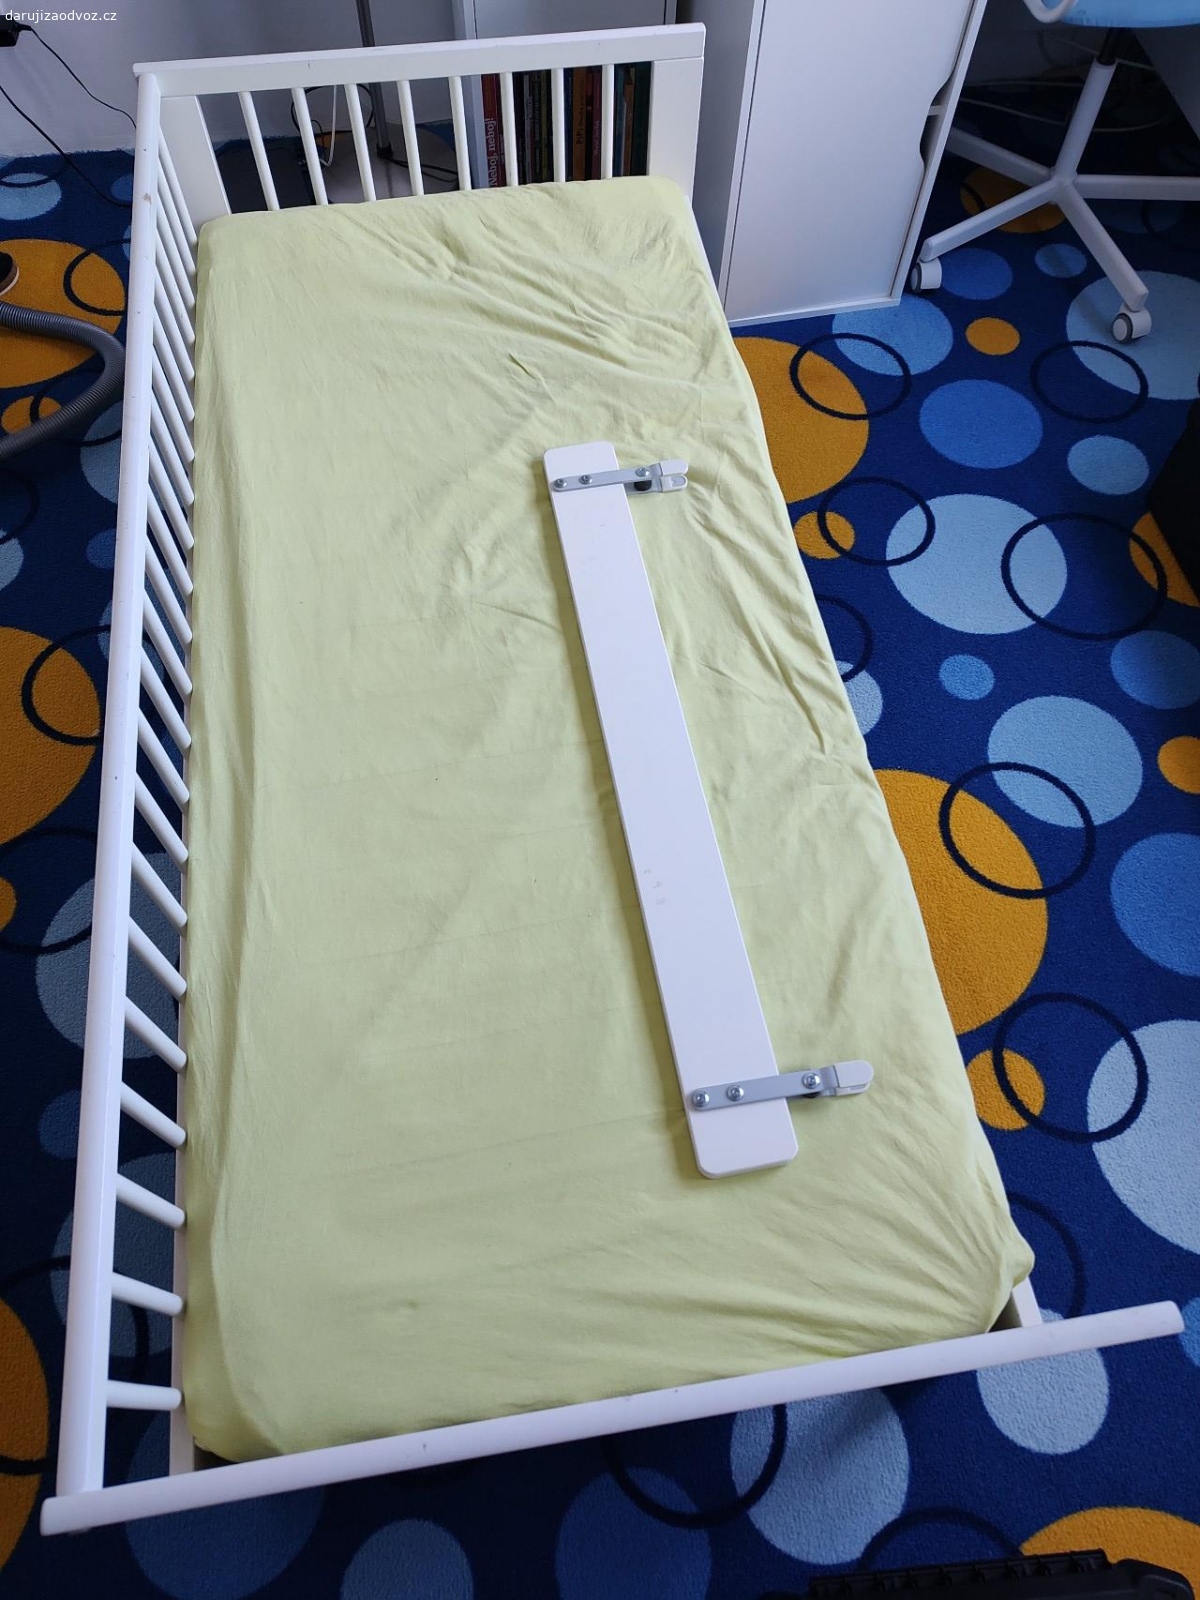 Dětská postel IKEA. Dětská postel IKEA z roku 2015. Stav odpovídá stáří. Včetně matrace. Ve složeném stavu.